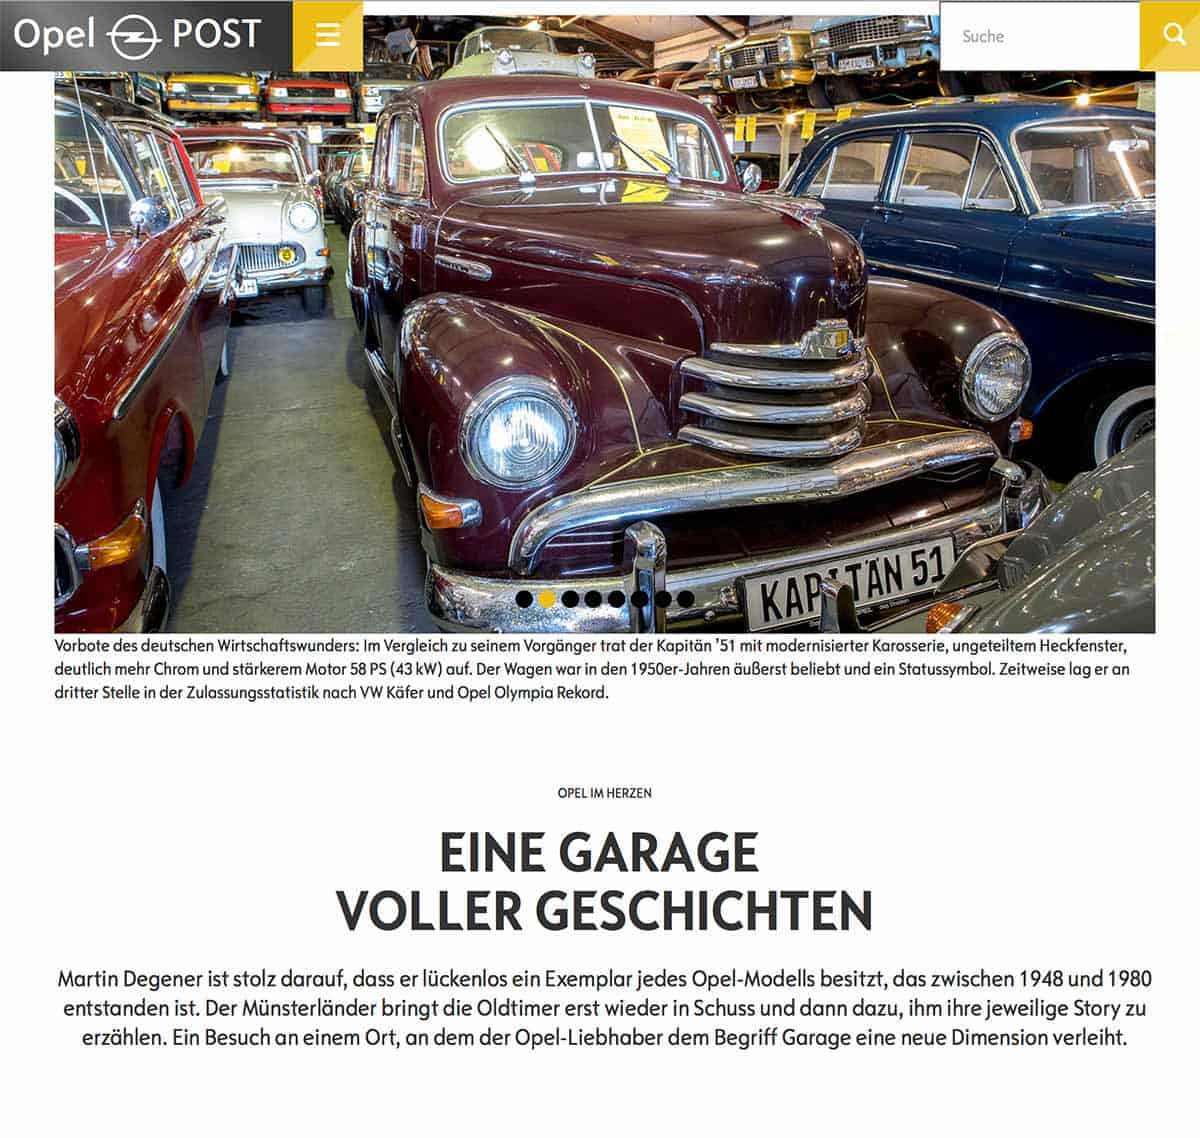 Artikel über einen Opelsammler im Online-Magazin "Opel Post"